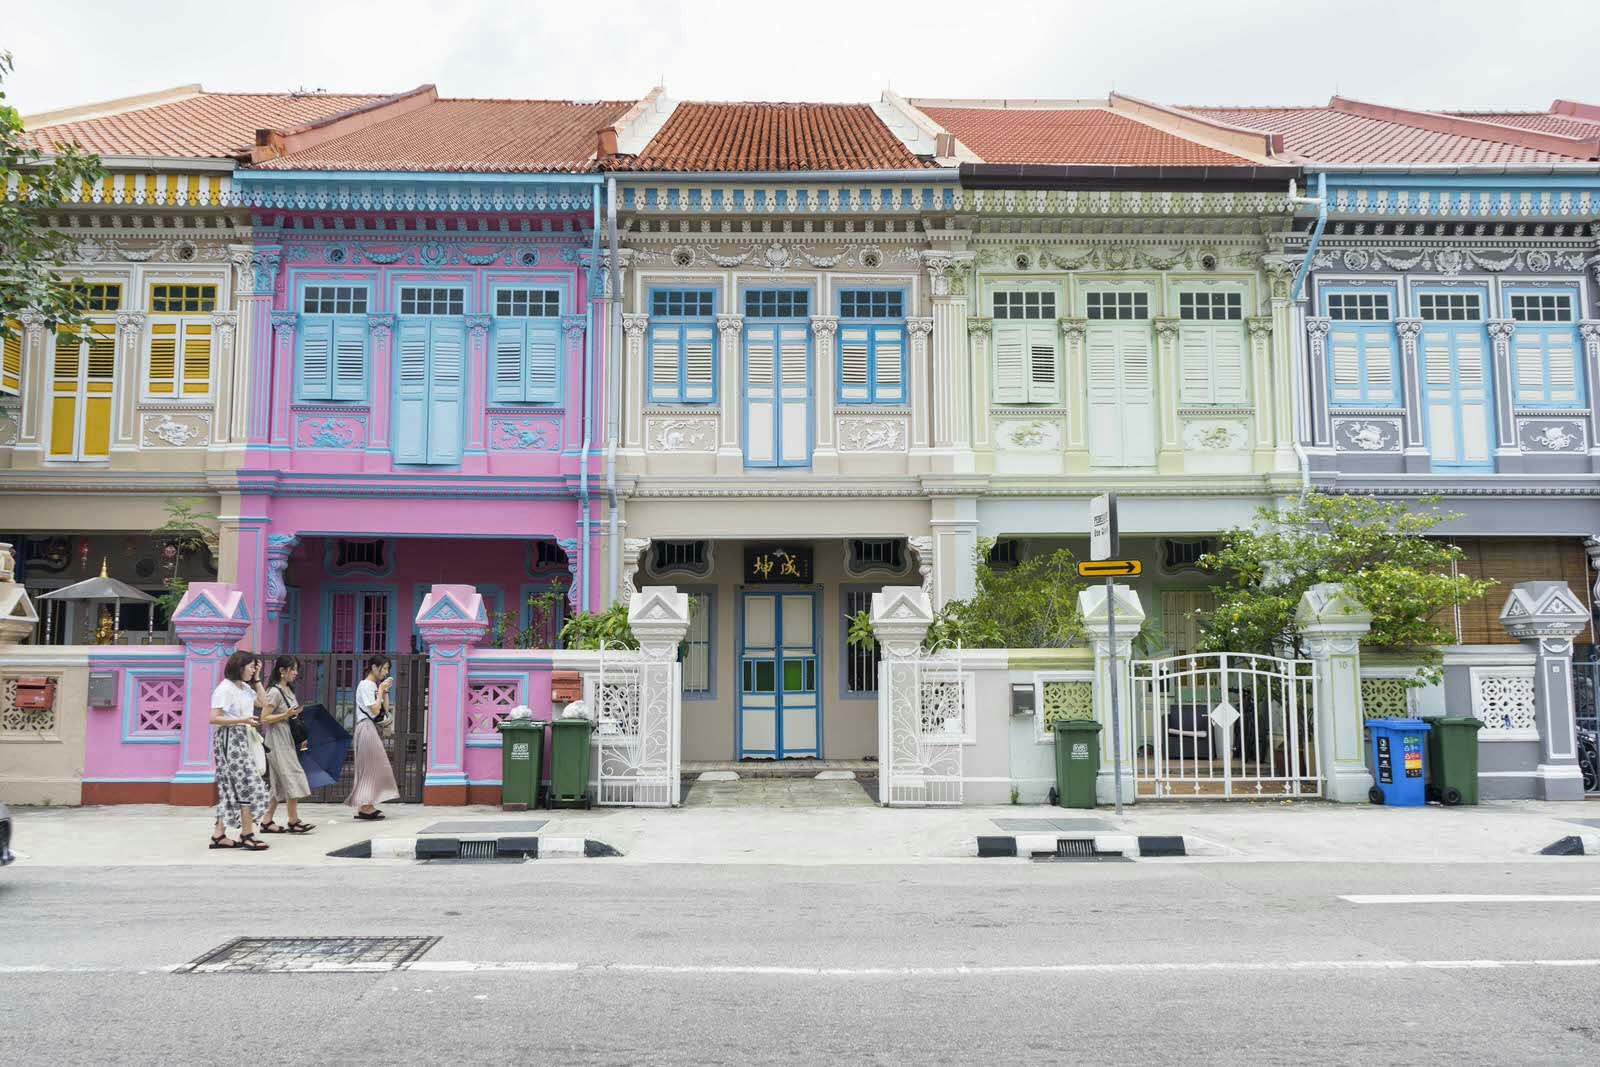 Färgglada Peranakan-hus i Singapore.  Det går tre kvinnor förbi de pastellfärgade hemmen. 